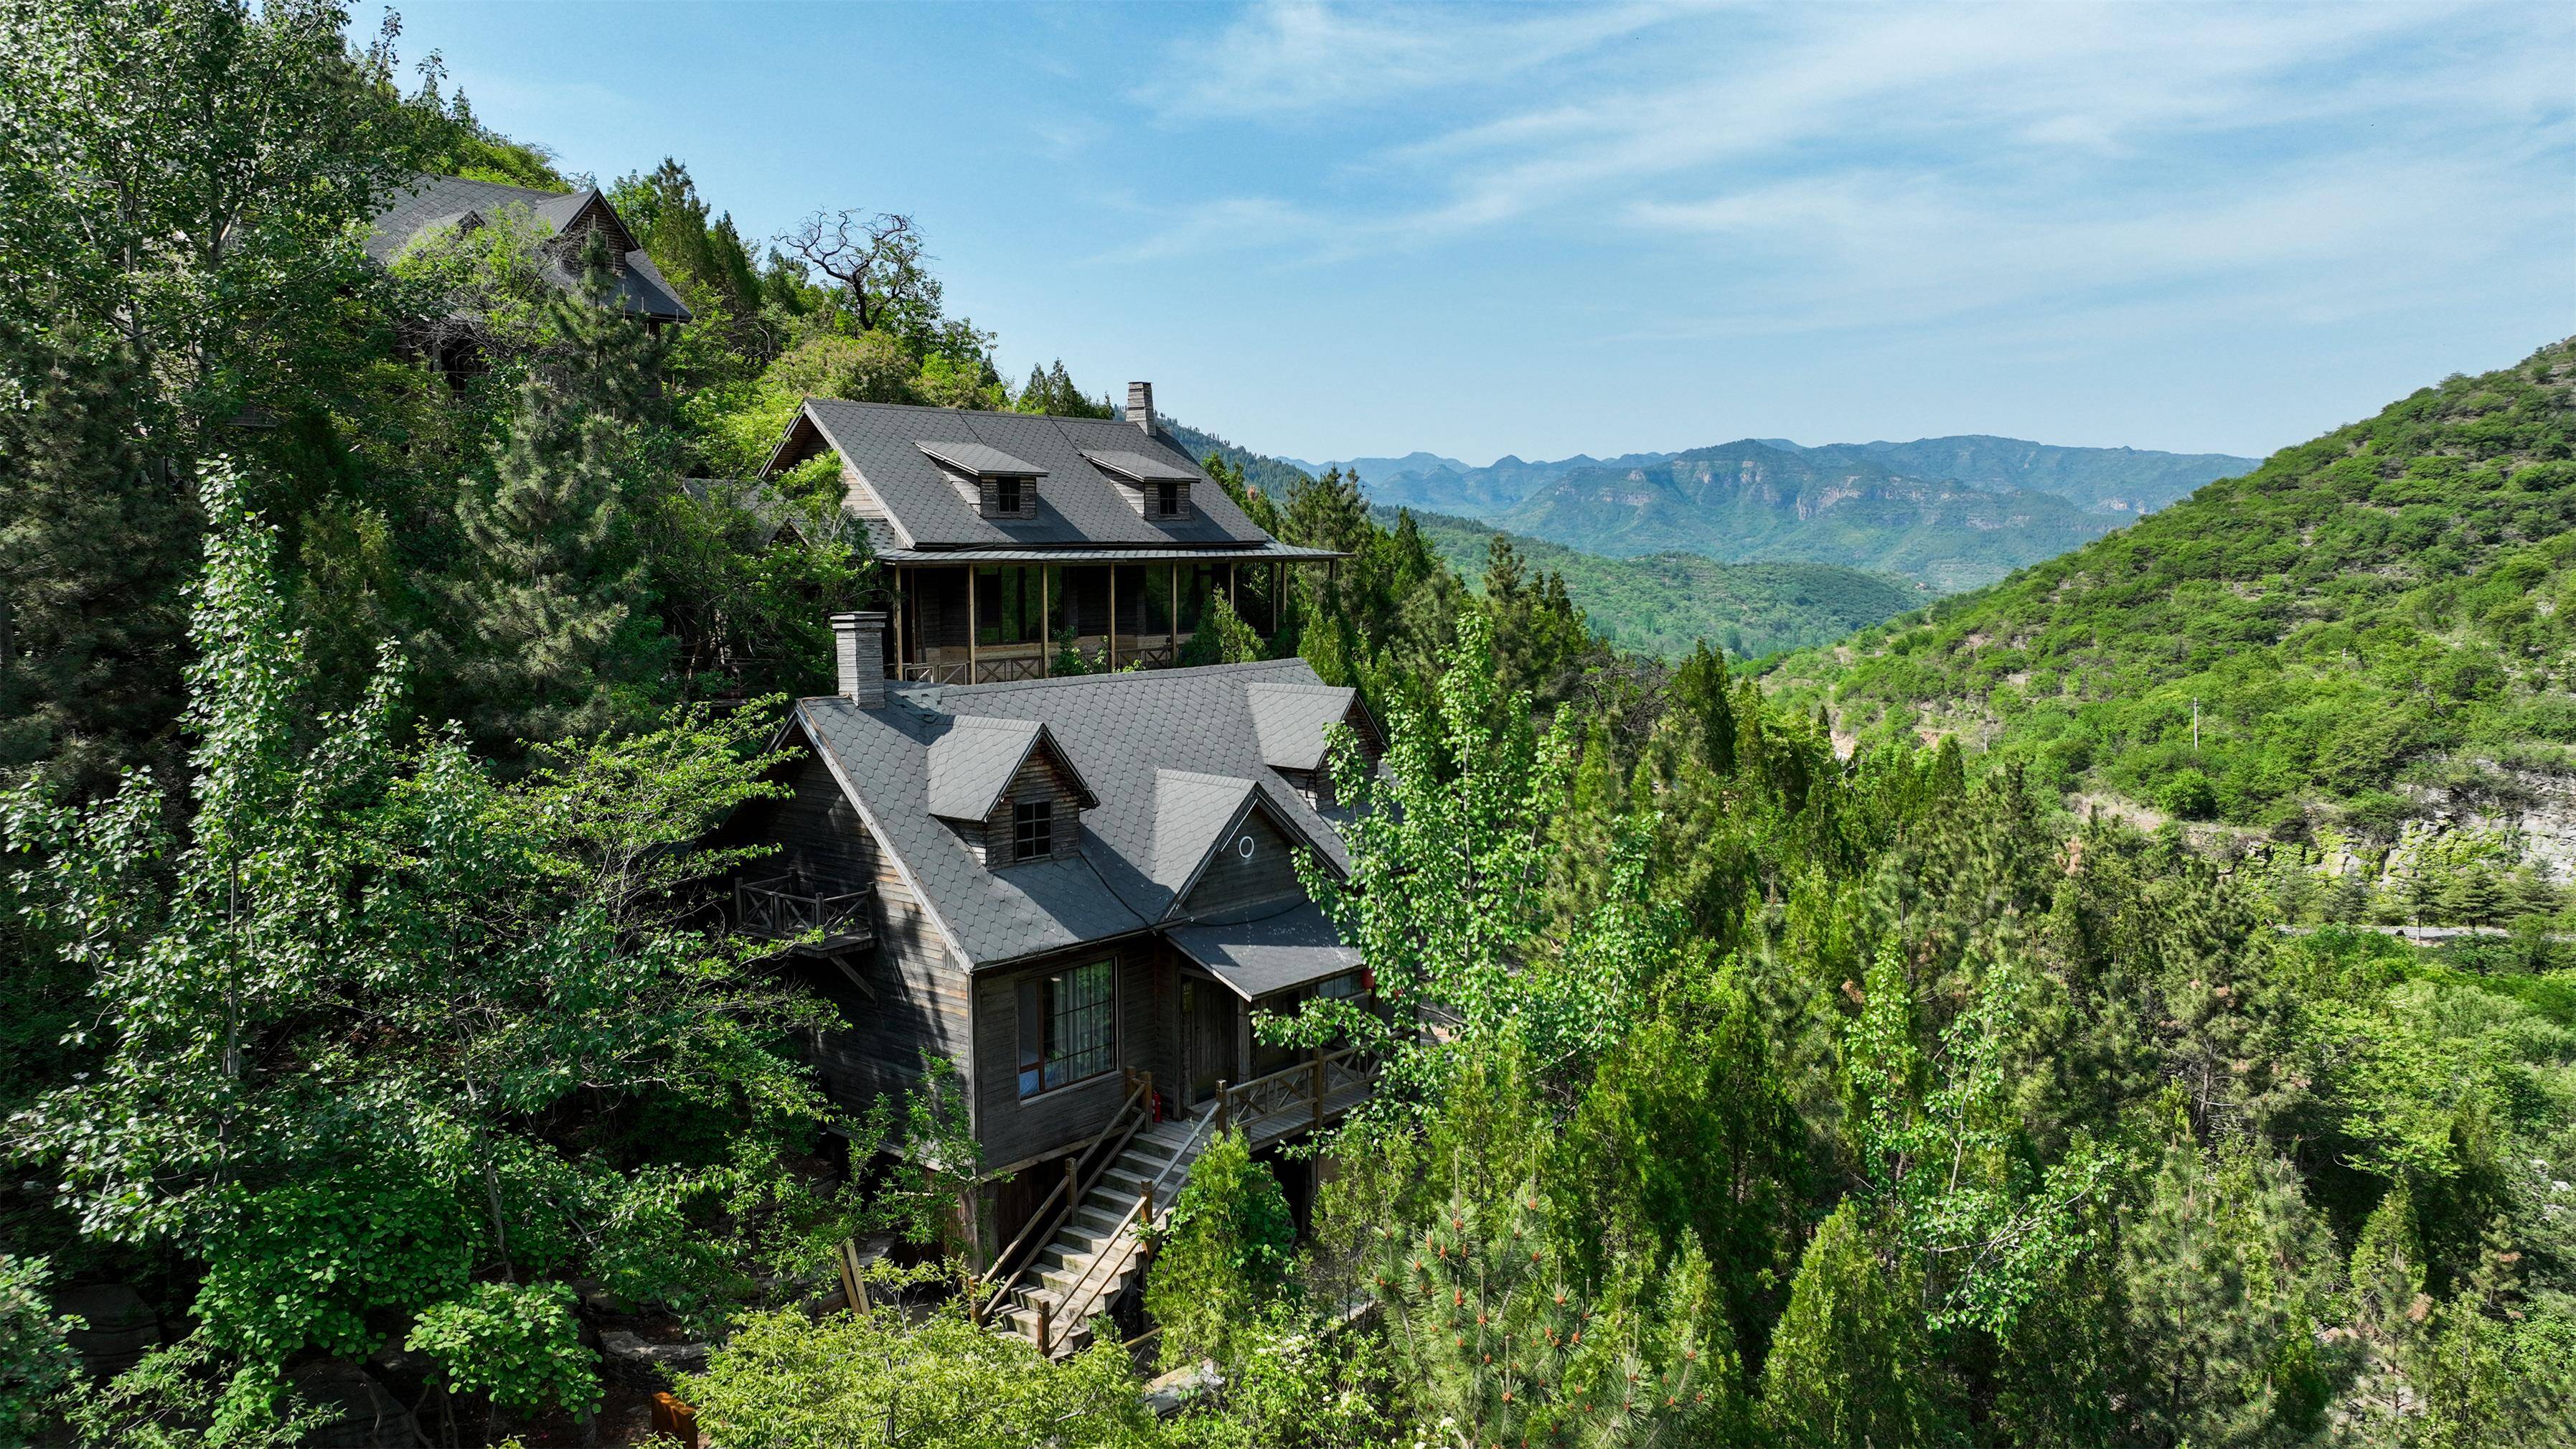 森林木屋共有23间森林度假酒店,屋内装潢焕新升级,散发着自然的木材